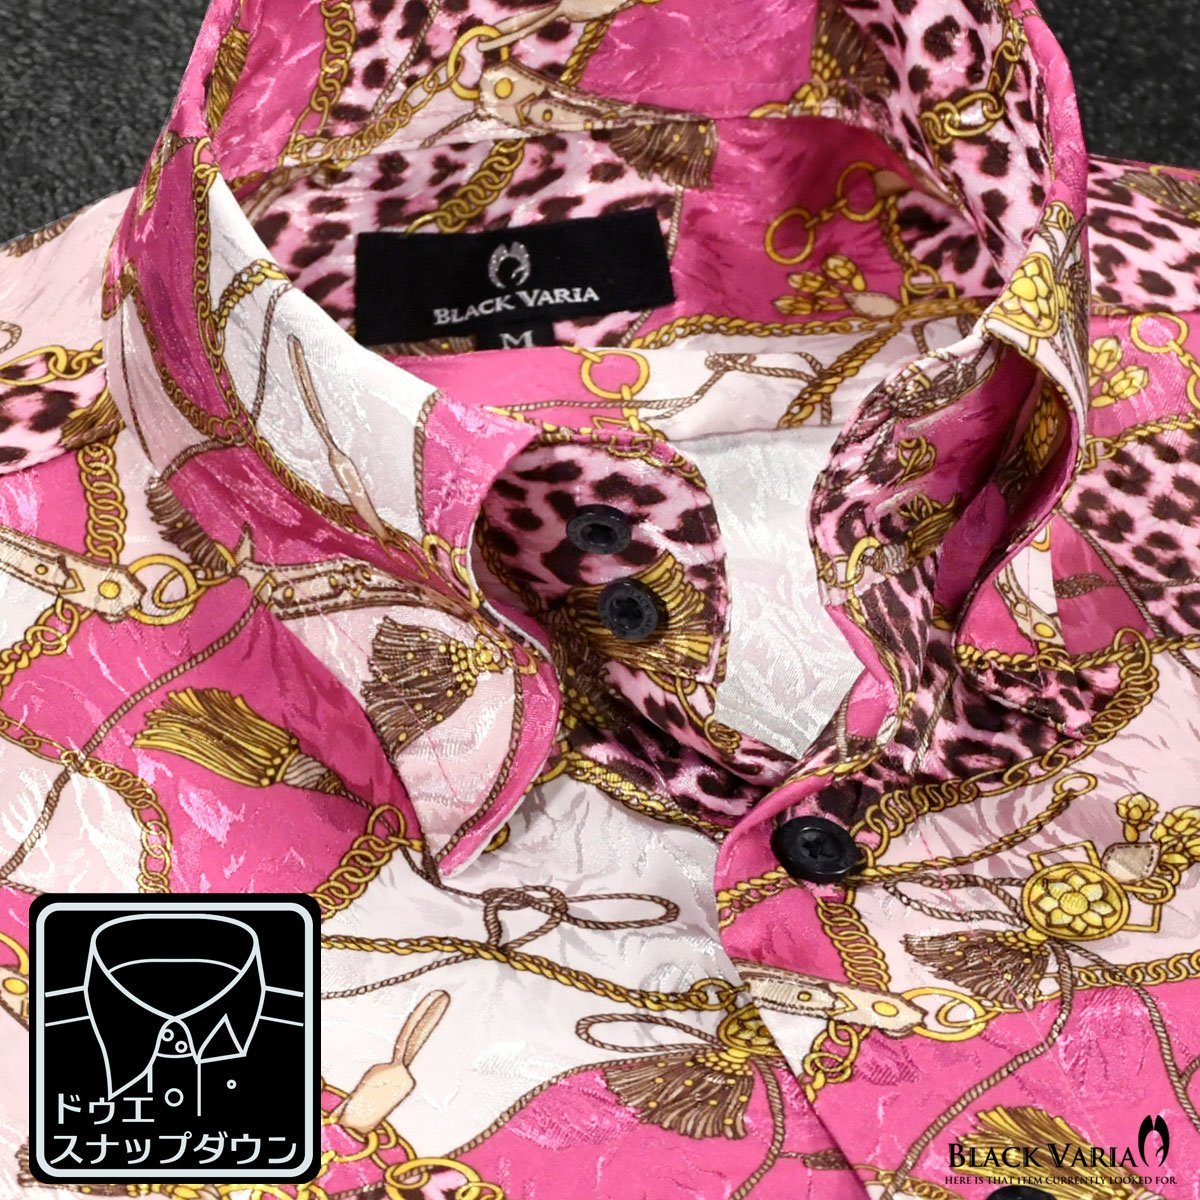 181718-pk BLACK VARIA ドゥエボットーニ 豹ヒョウ×鎖スカーフ柄 スナップダウン ジャガードドレスシャツ メンズ(ピンク桃) M パーティー